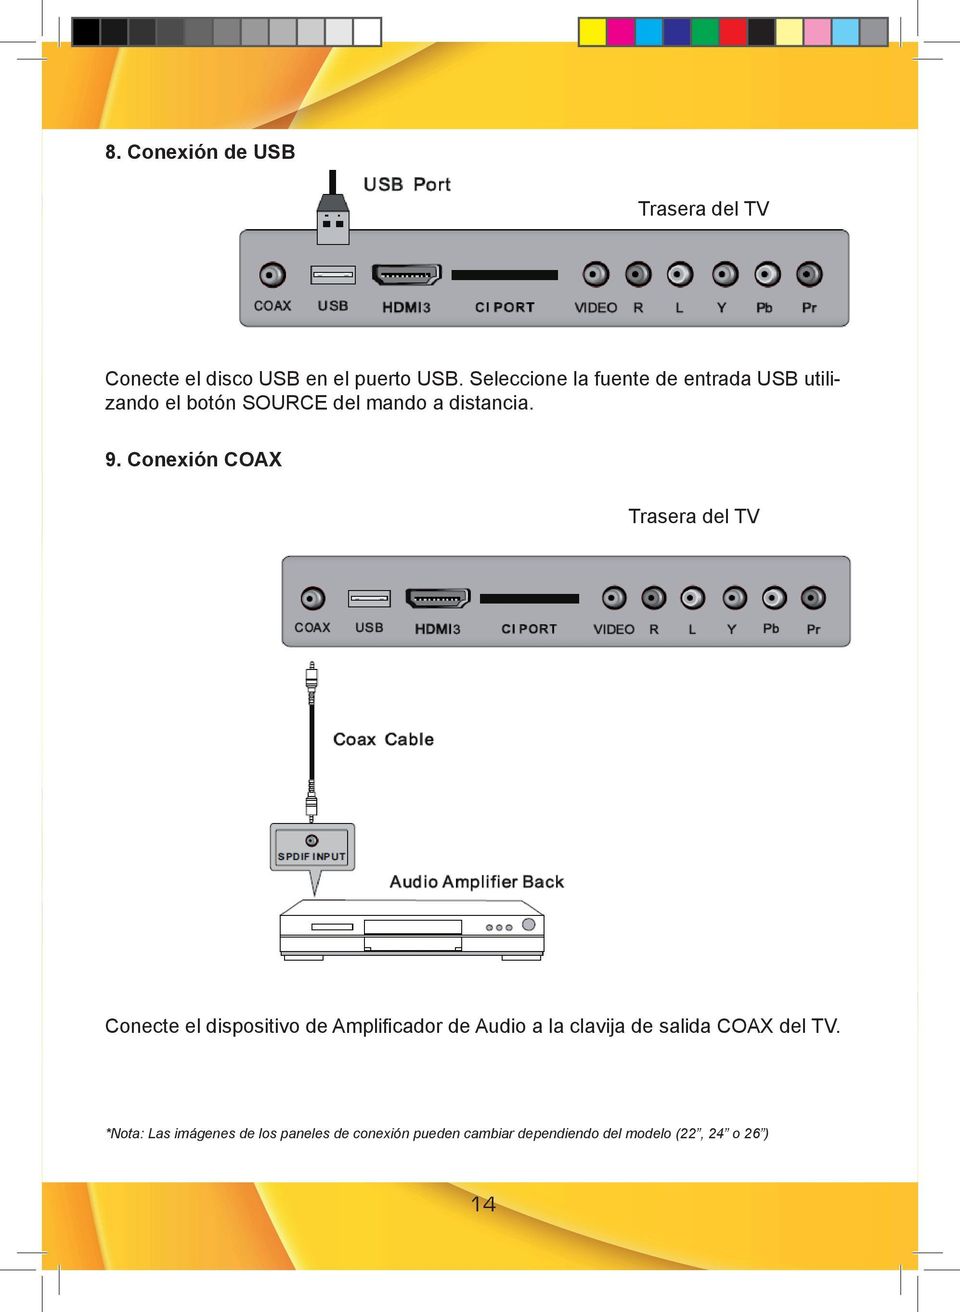 Conexión COAX Trasera del TV Conecte el dispositivo de Amplificador de Audio a la clavija de